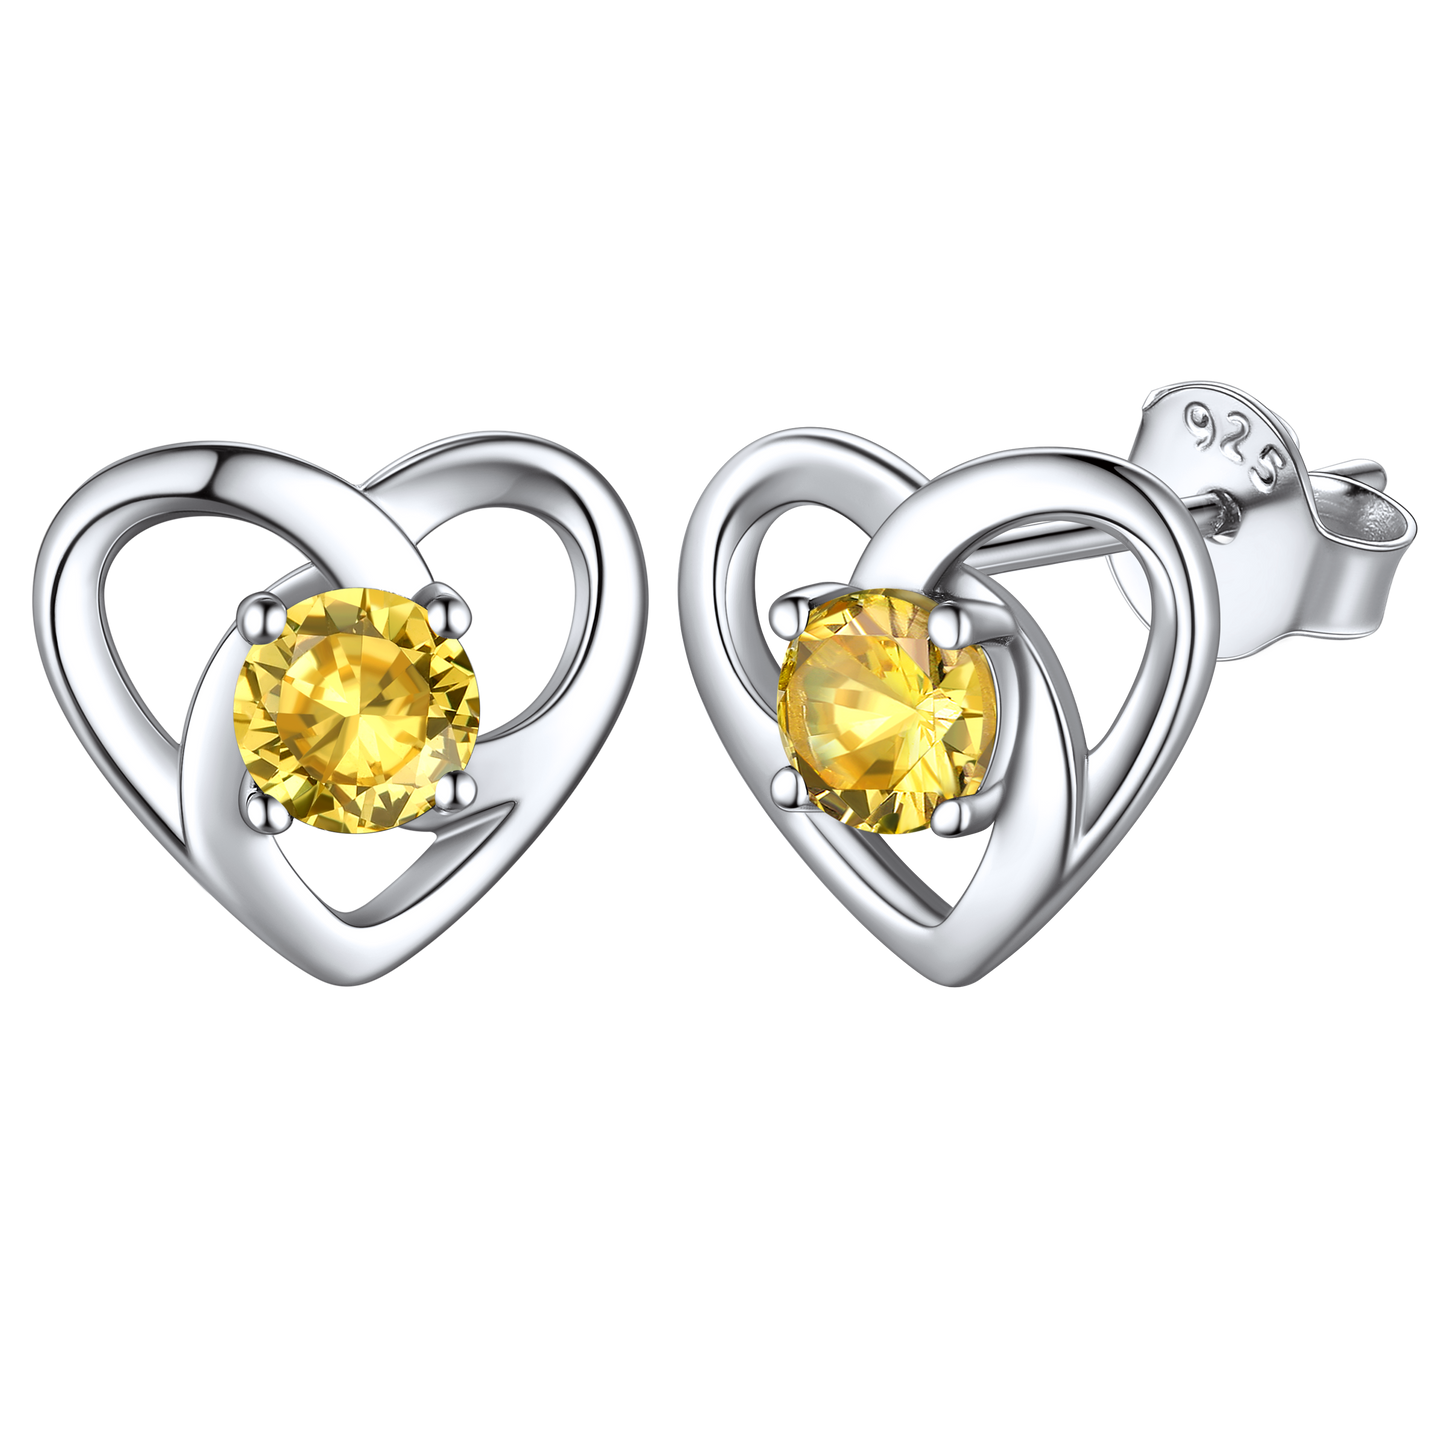 Sterling Silver Heart Celtic Knot Birthstone Stud Earrings